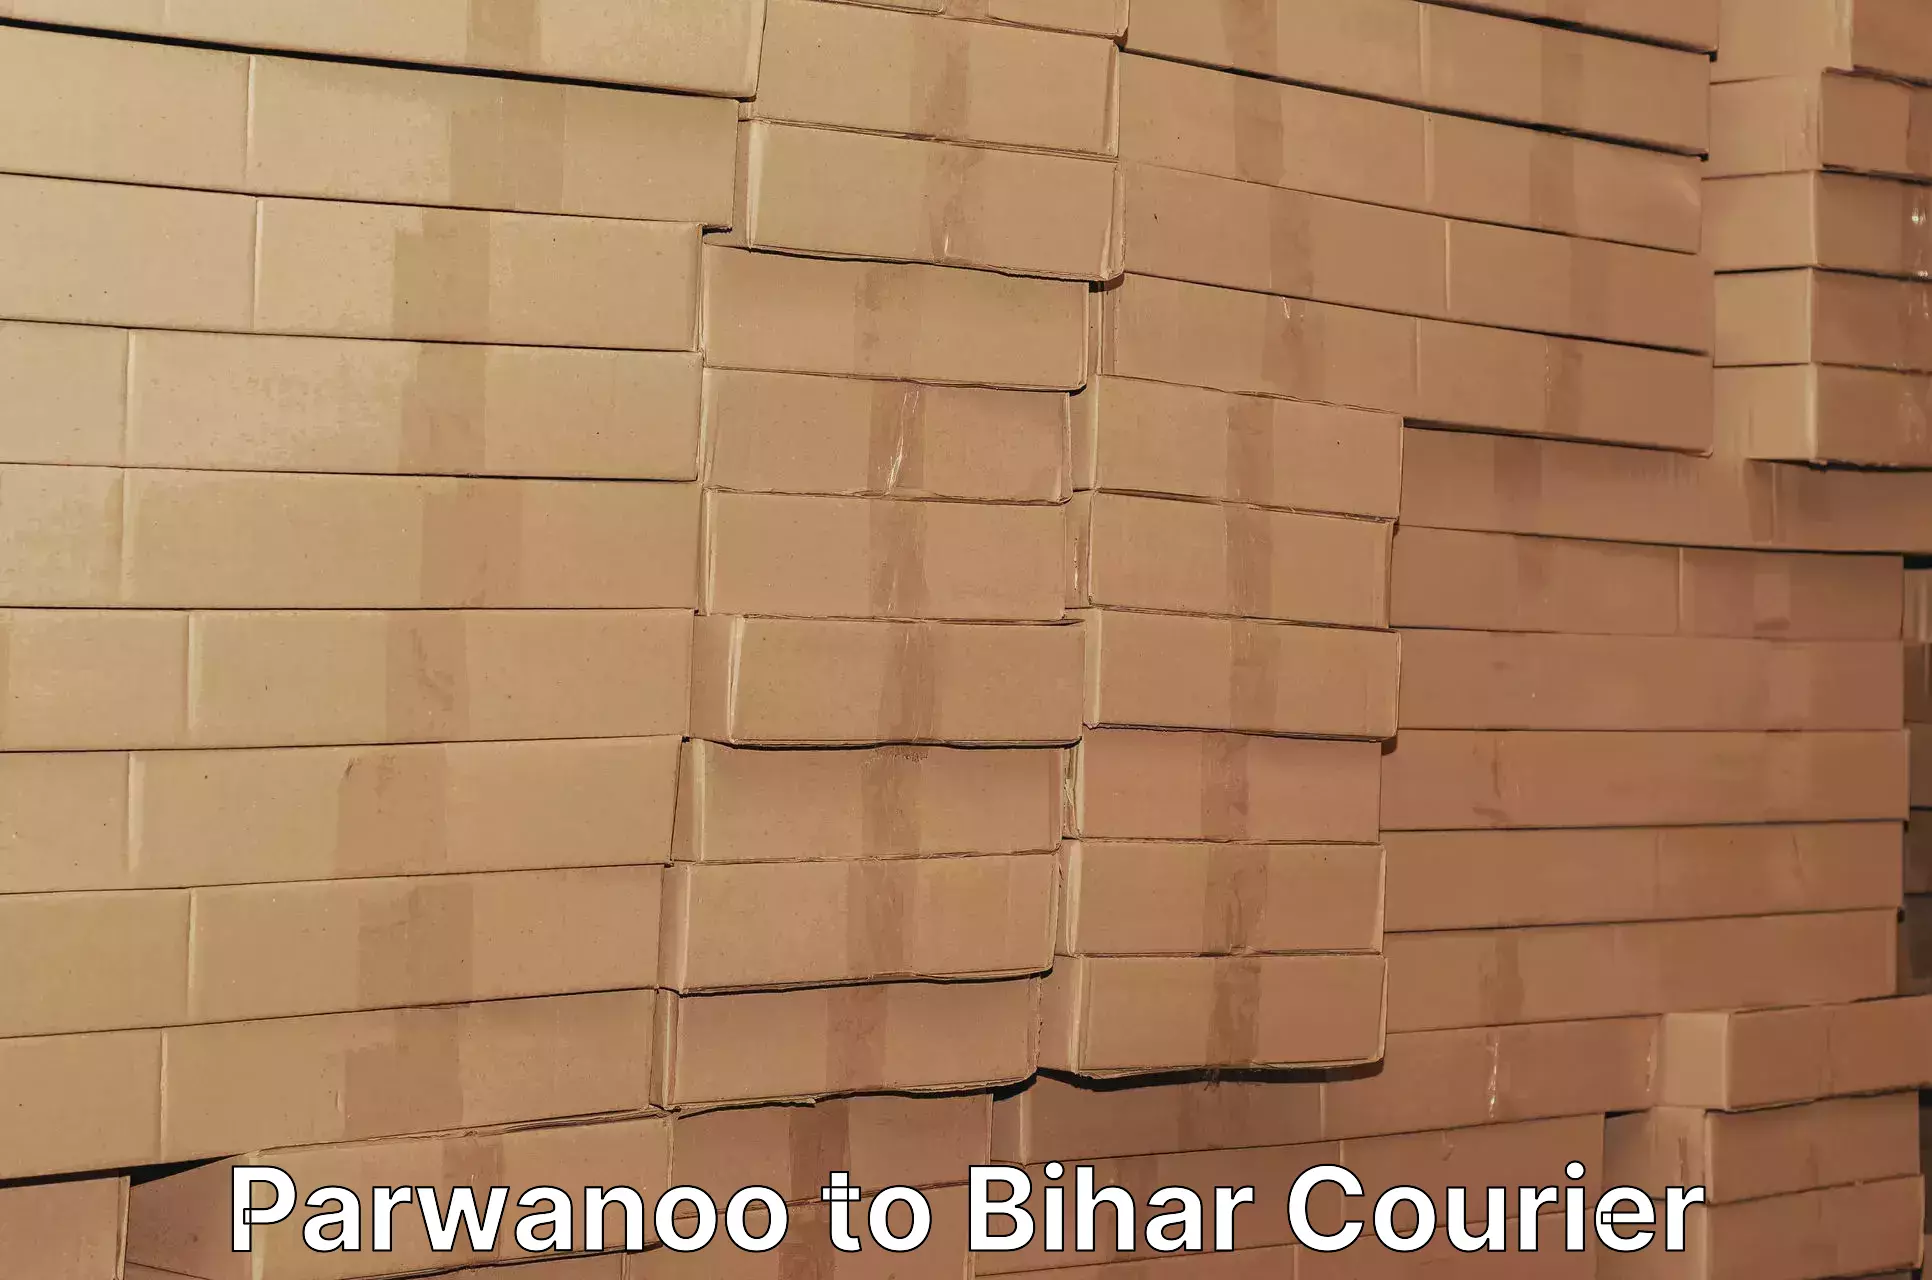 Express courier capabilities Parwanoo to Deo Aurangabad